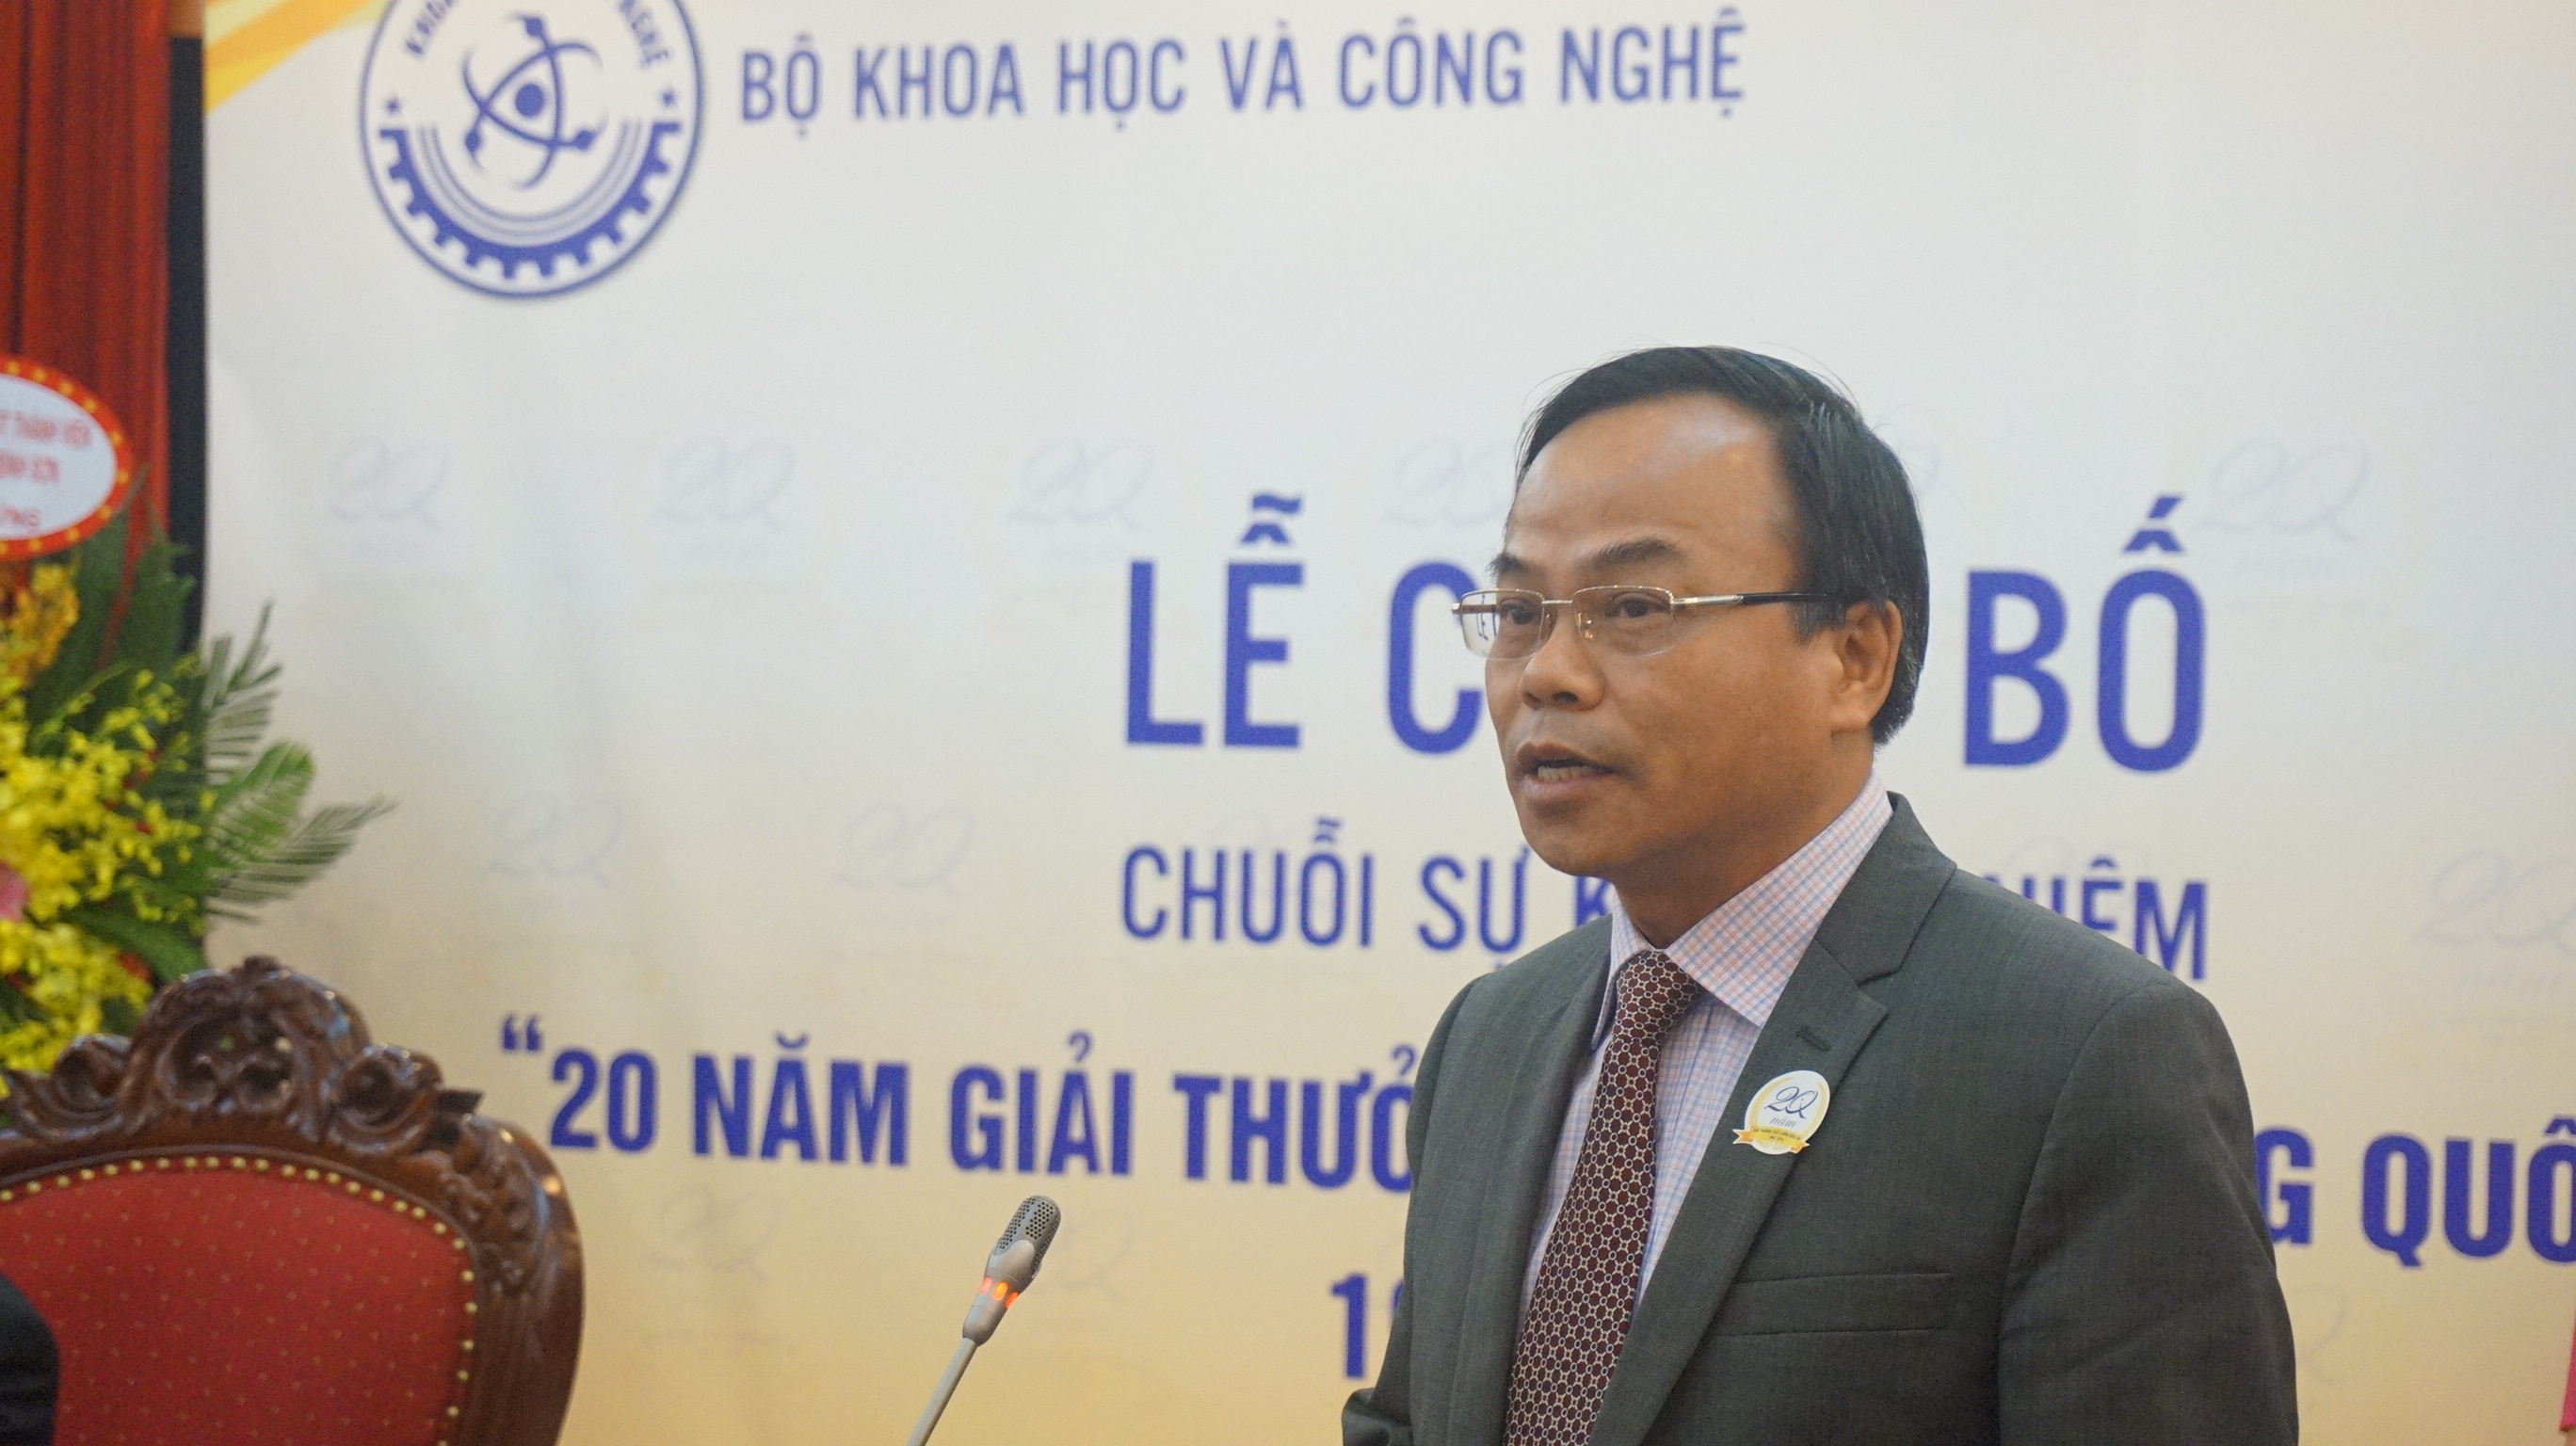 Ông Trần Văn Vinh - Tổng cục trưởng Tổng cục Tiêu chuẩn, Đo lường, Chất lượng phát biểu tại buổi lễ công bố.